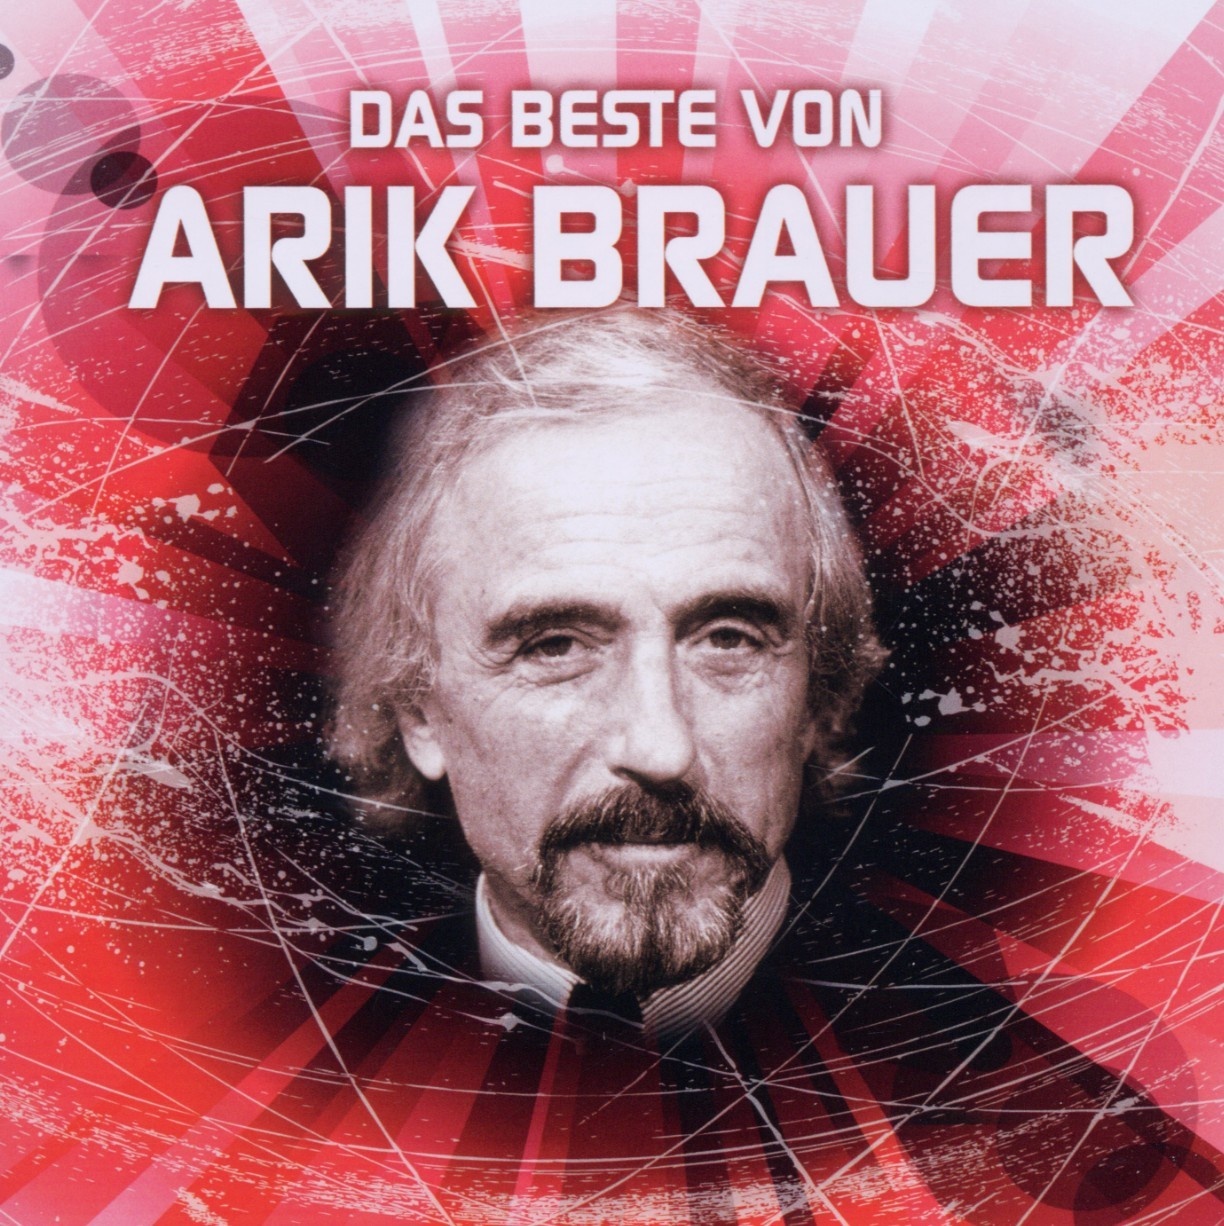 Das Beste Von Arik Brauer - Arik Brauer. (CD)